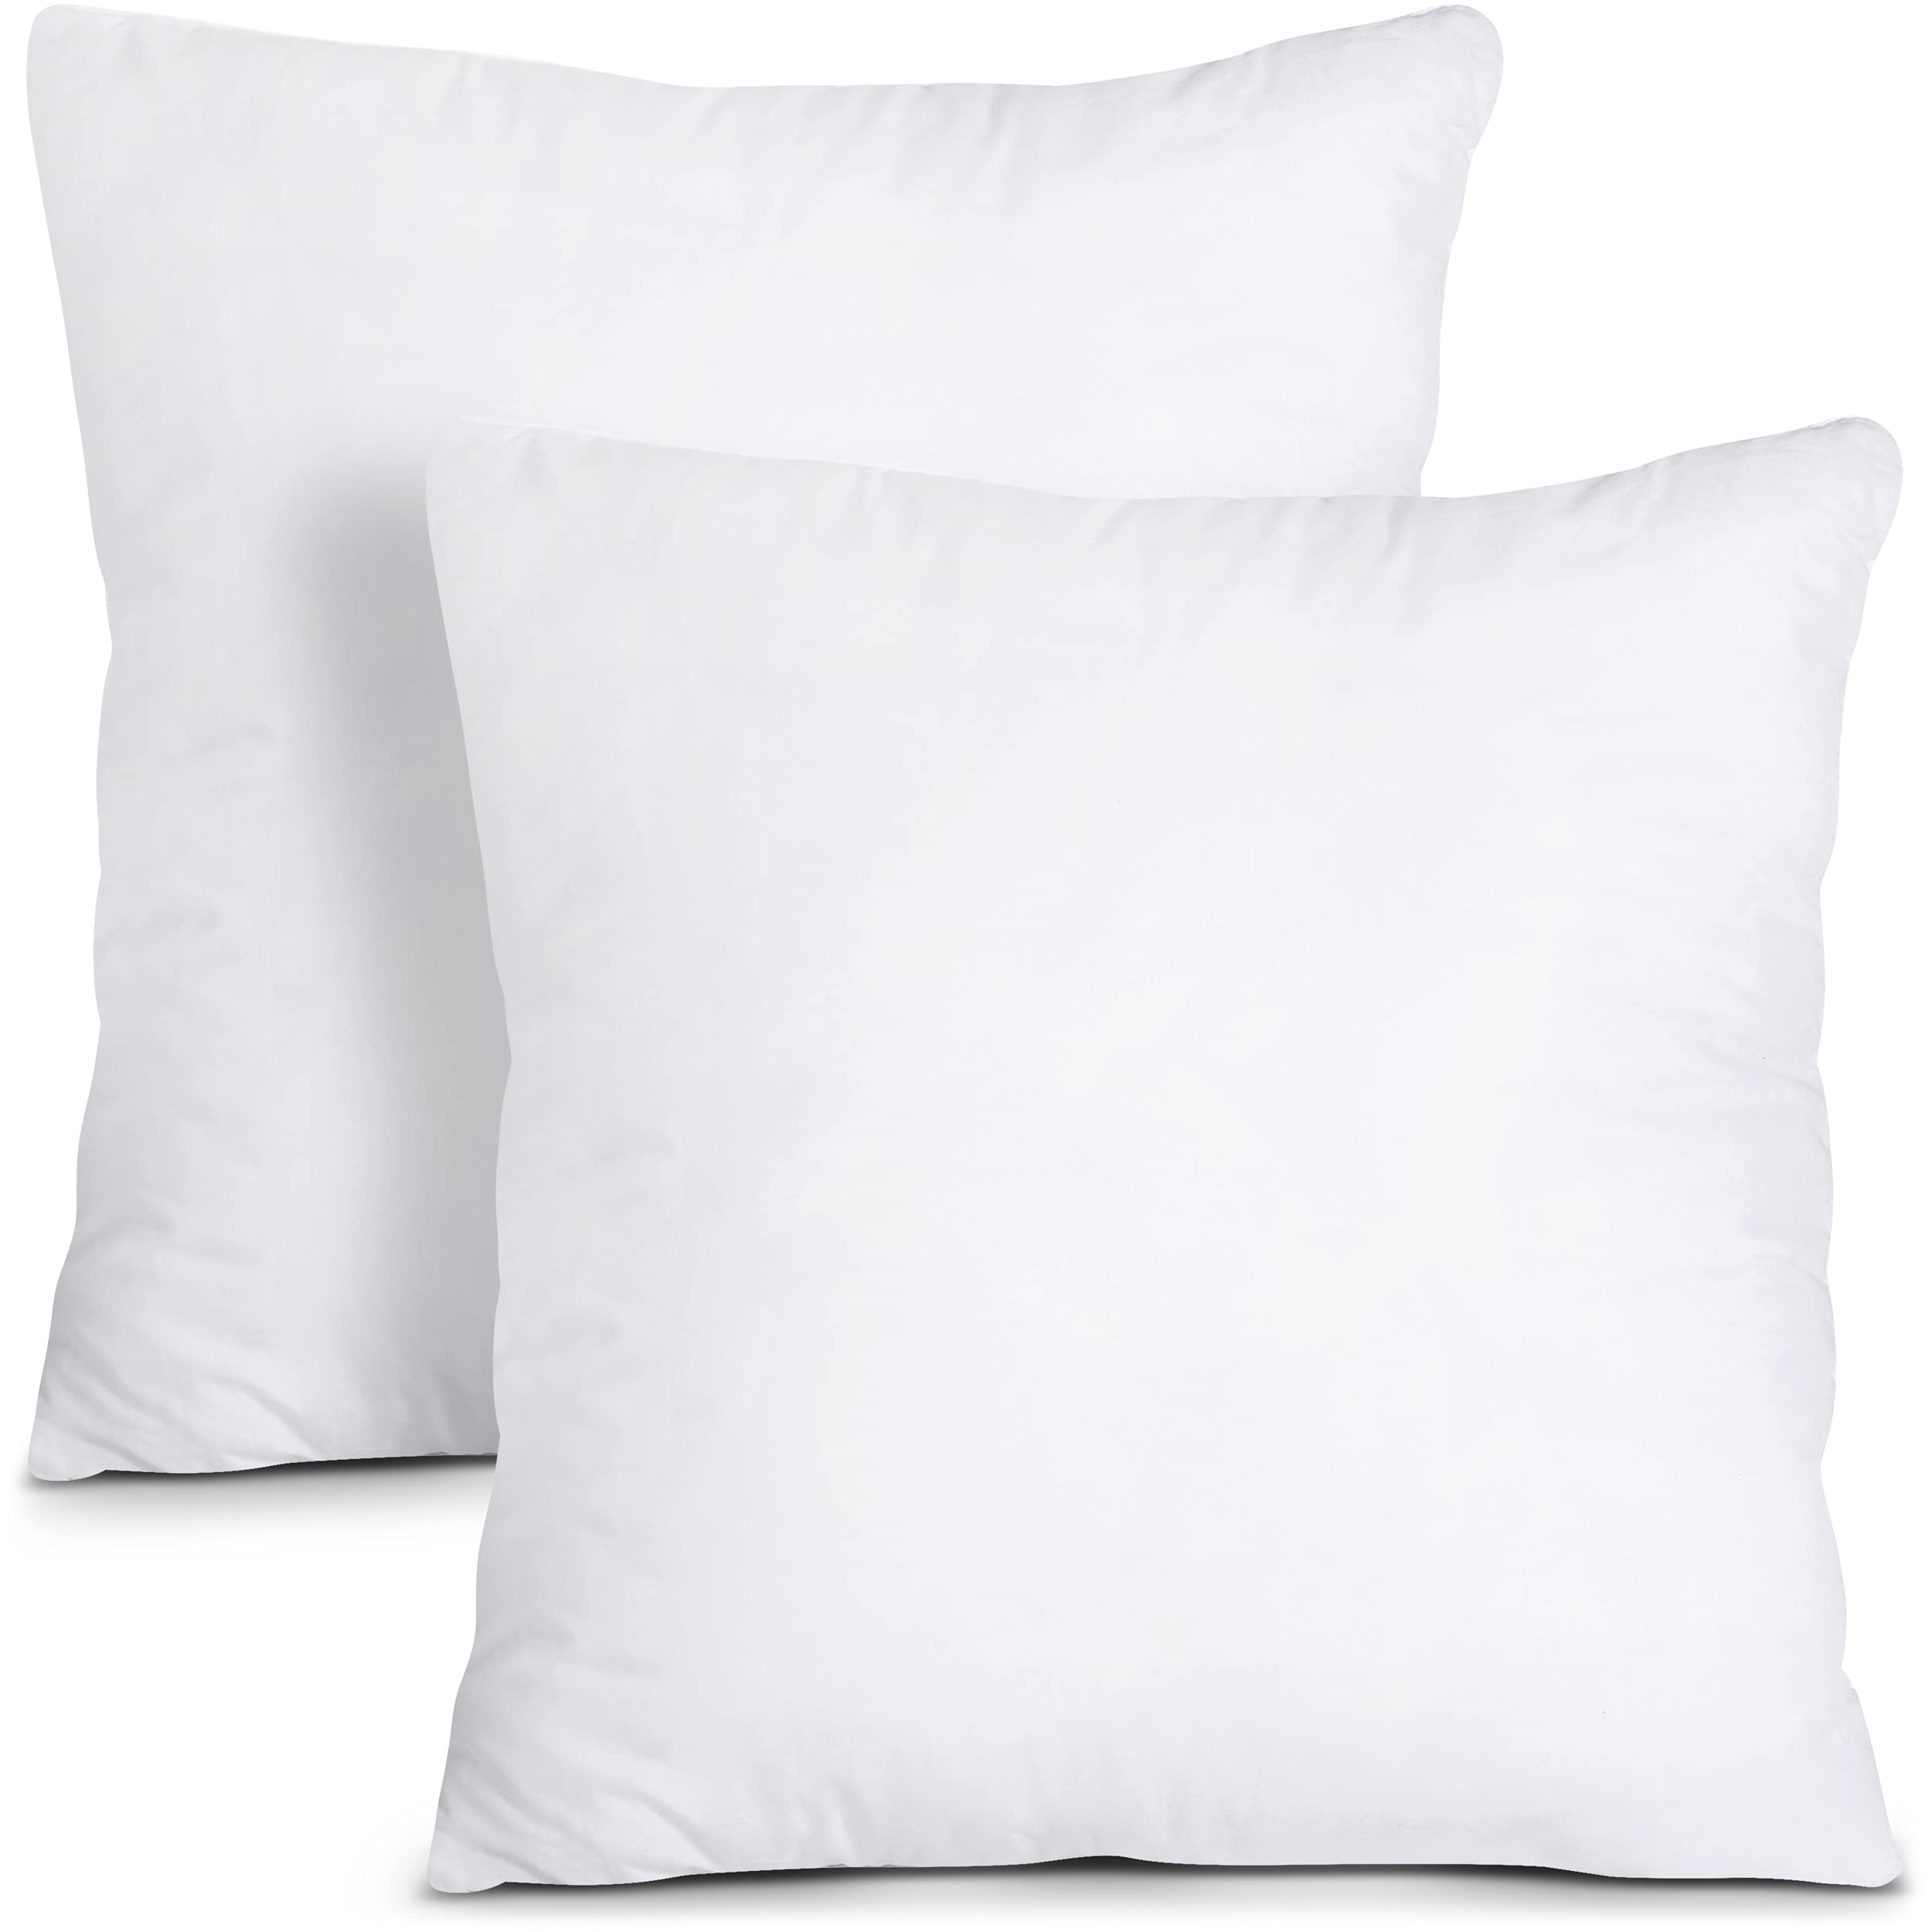 Mua Utopia Bedding Throw Pillows Insert (Pack of 2, White) - 16 x ...